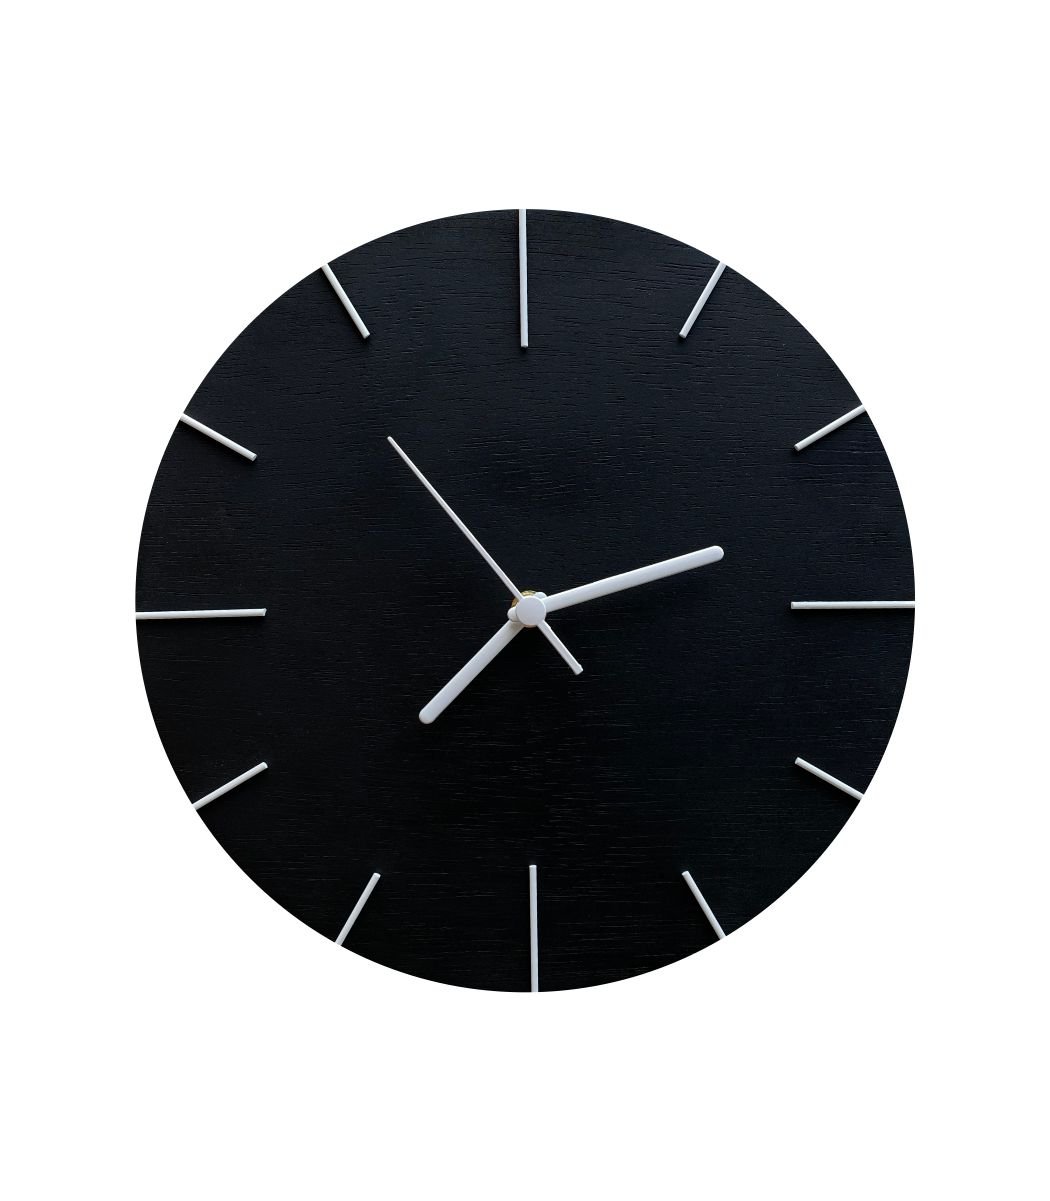 Relógio de Parede Em Madeira Preto Fosco com Ponteiros Branco 30cm - 1